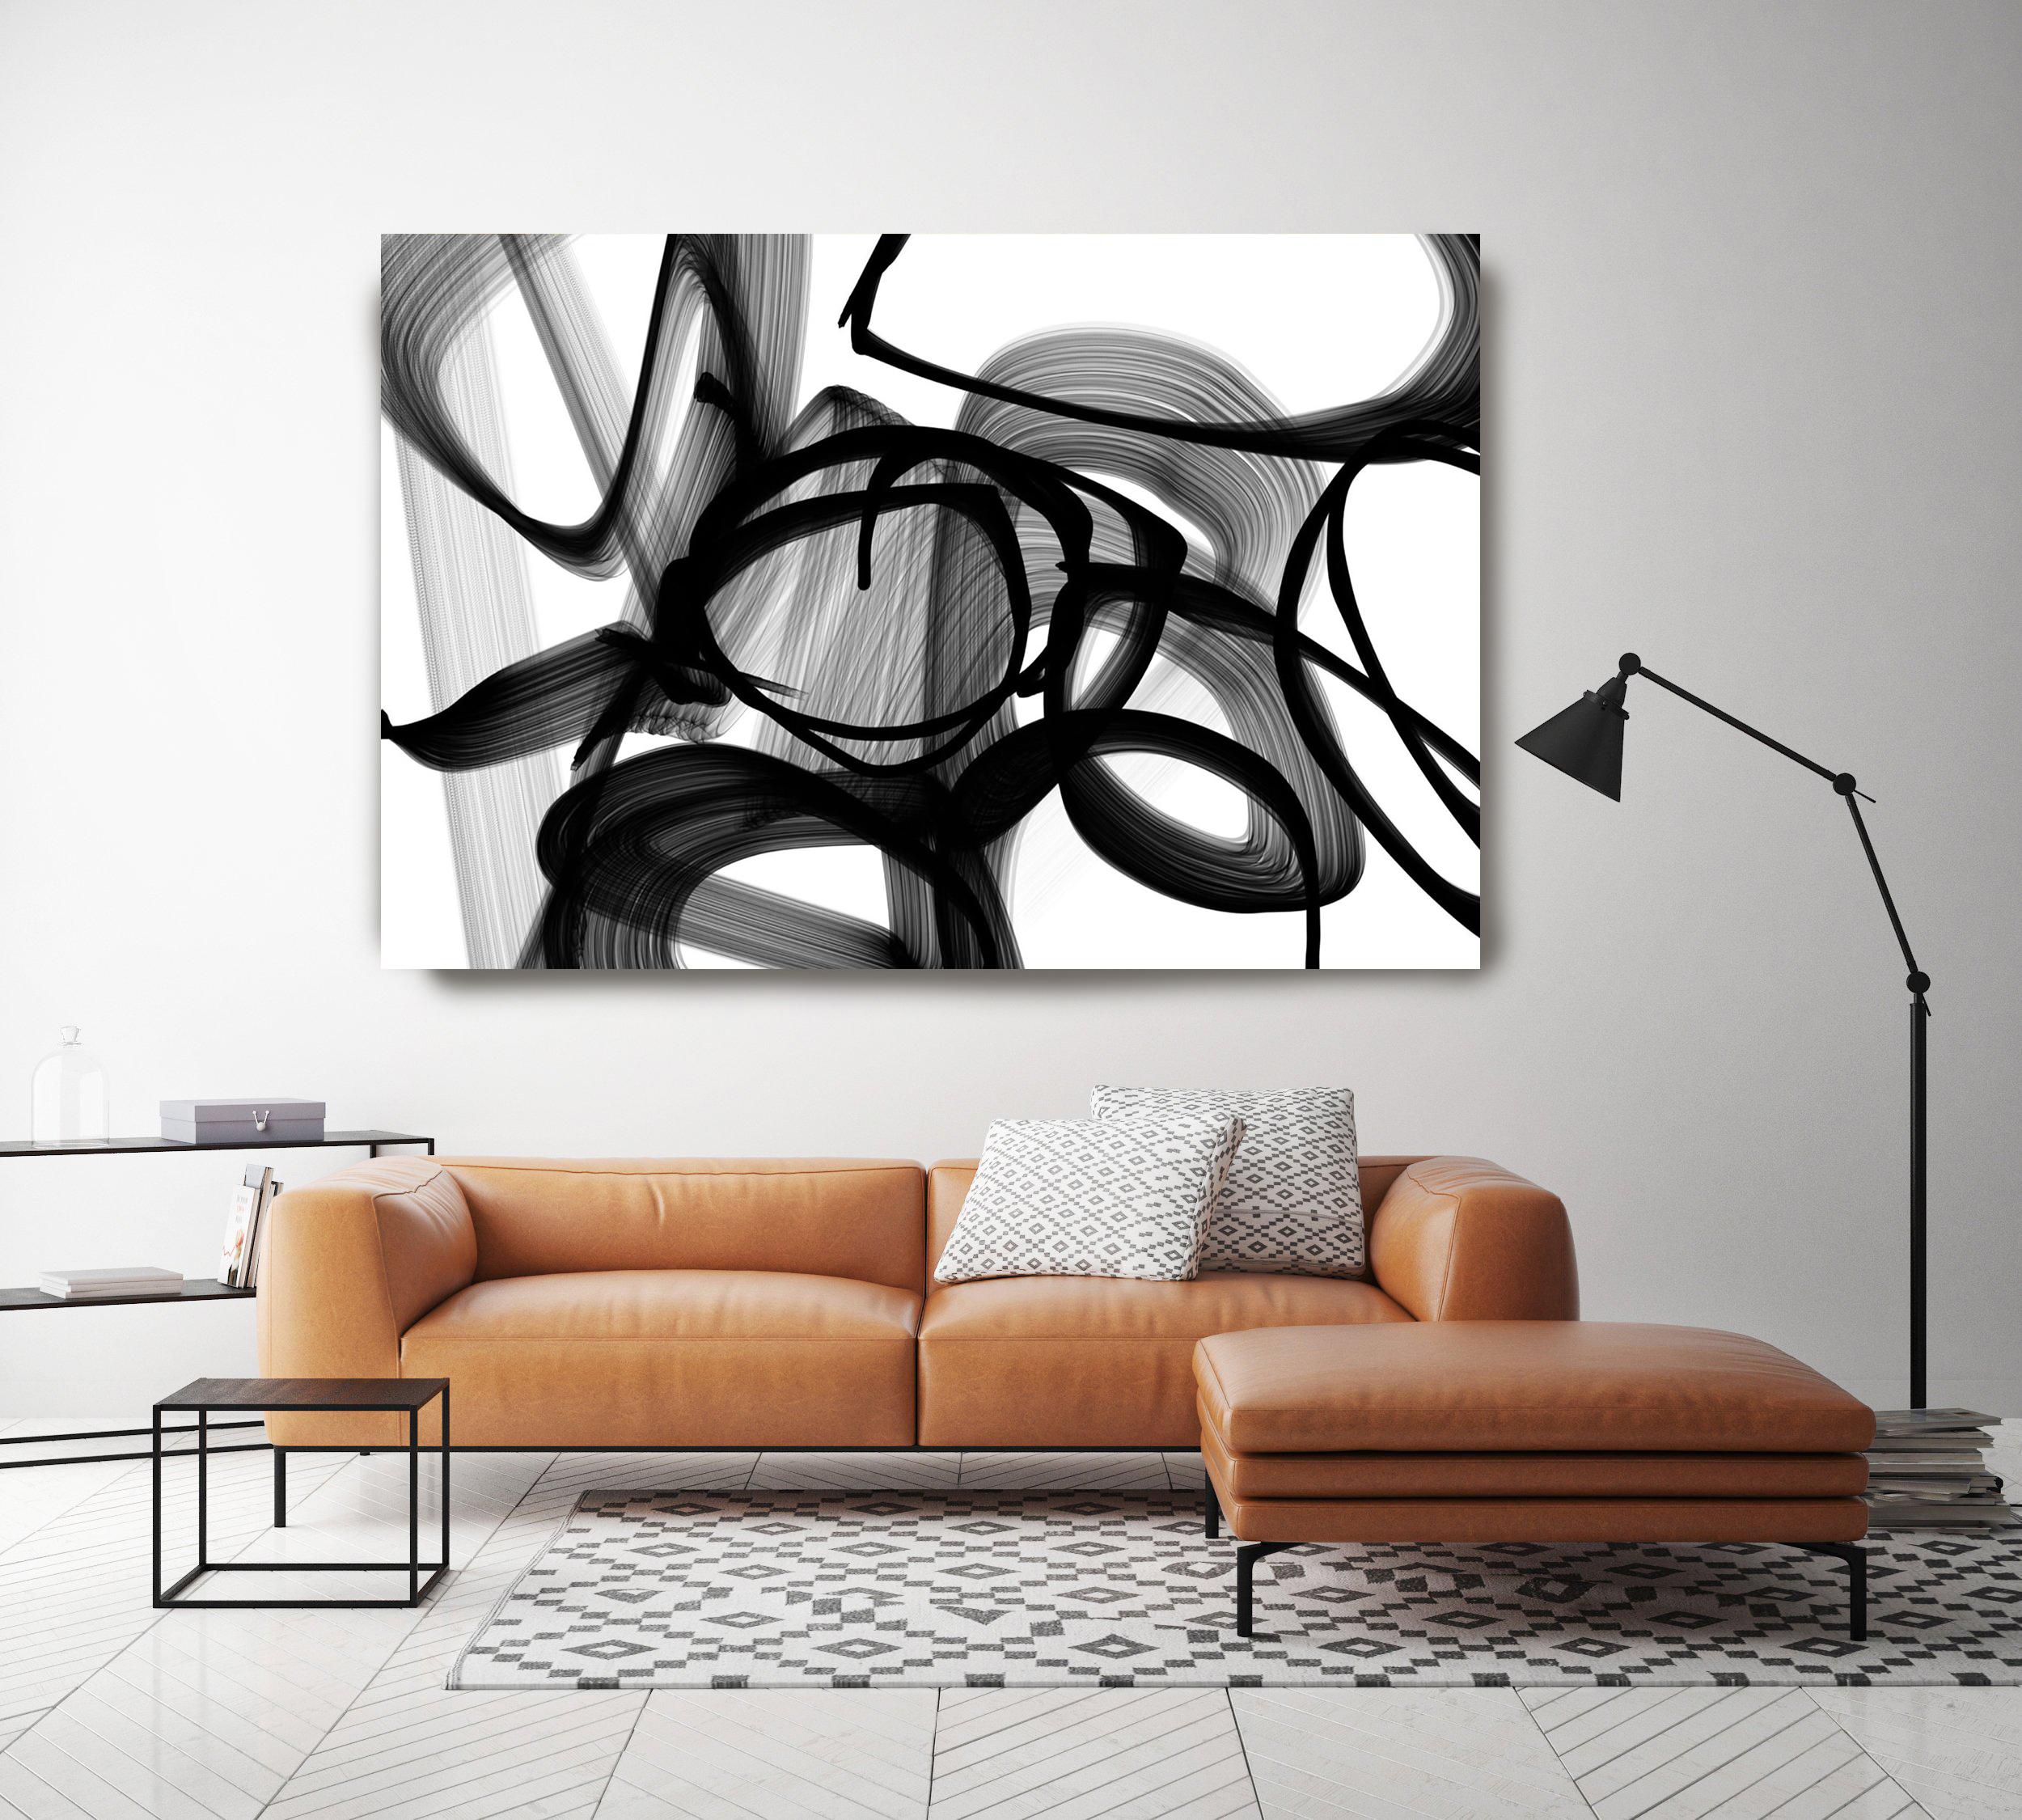 Brushstrokes in Schwarz und Weiß Mixed Media auf Leinwand 60 x 40"" 